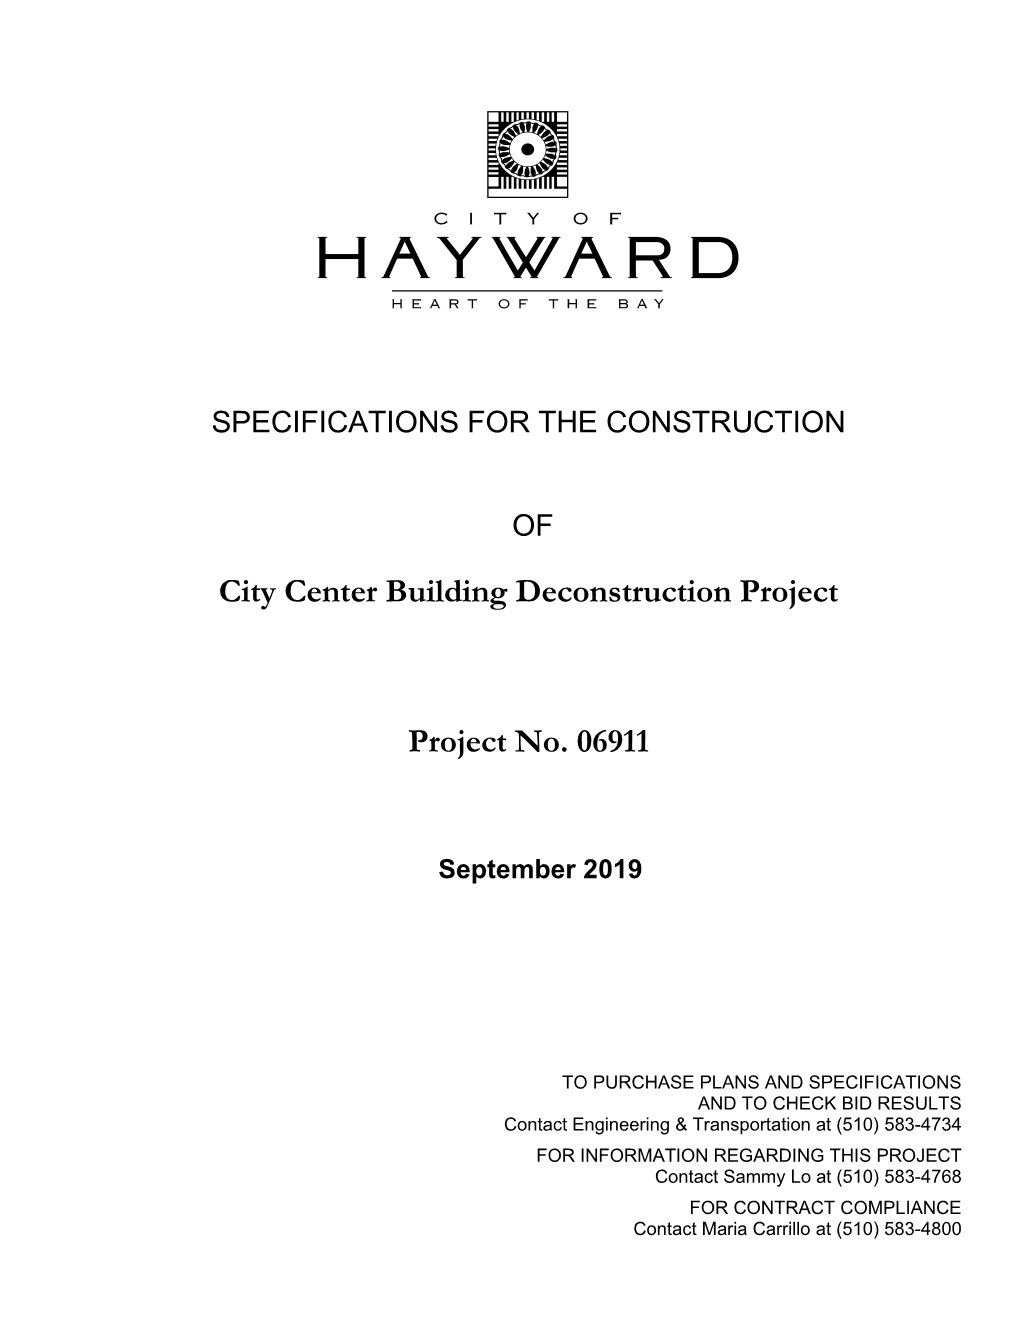 City Center Building Deconstruction Project Project No. 06911